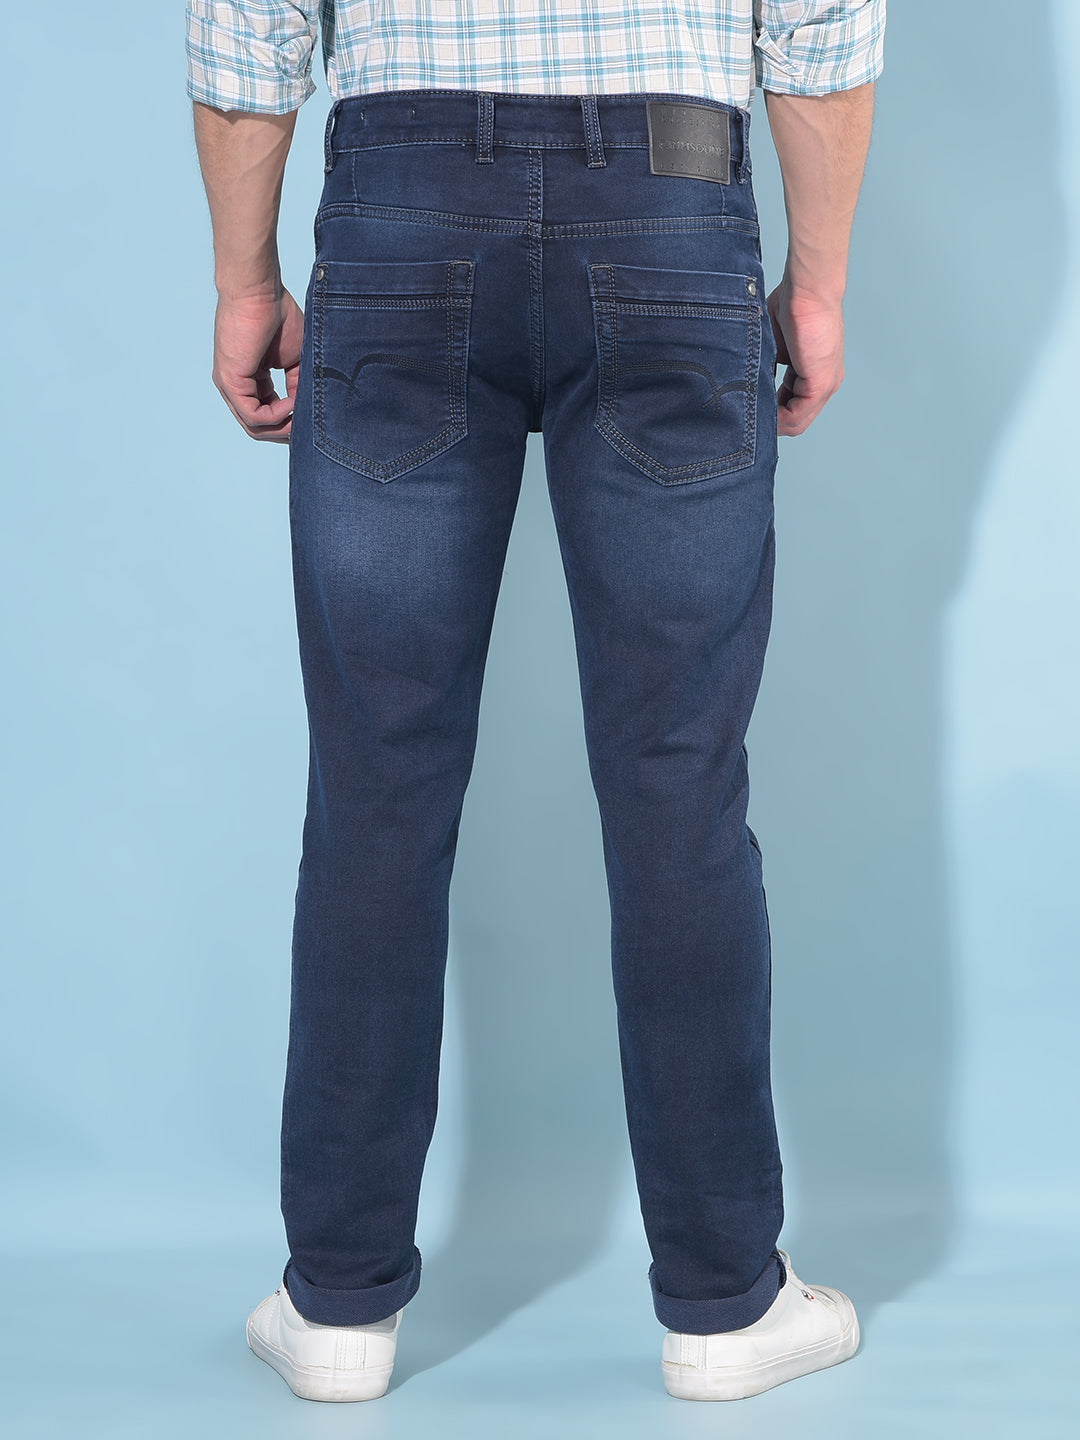 Blue Cotton Jeans-Men Jeans-Crimsoune Club